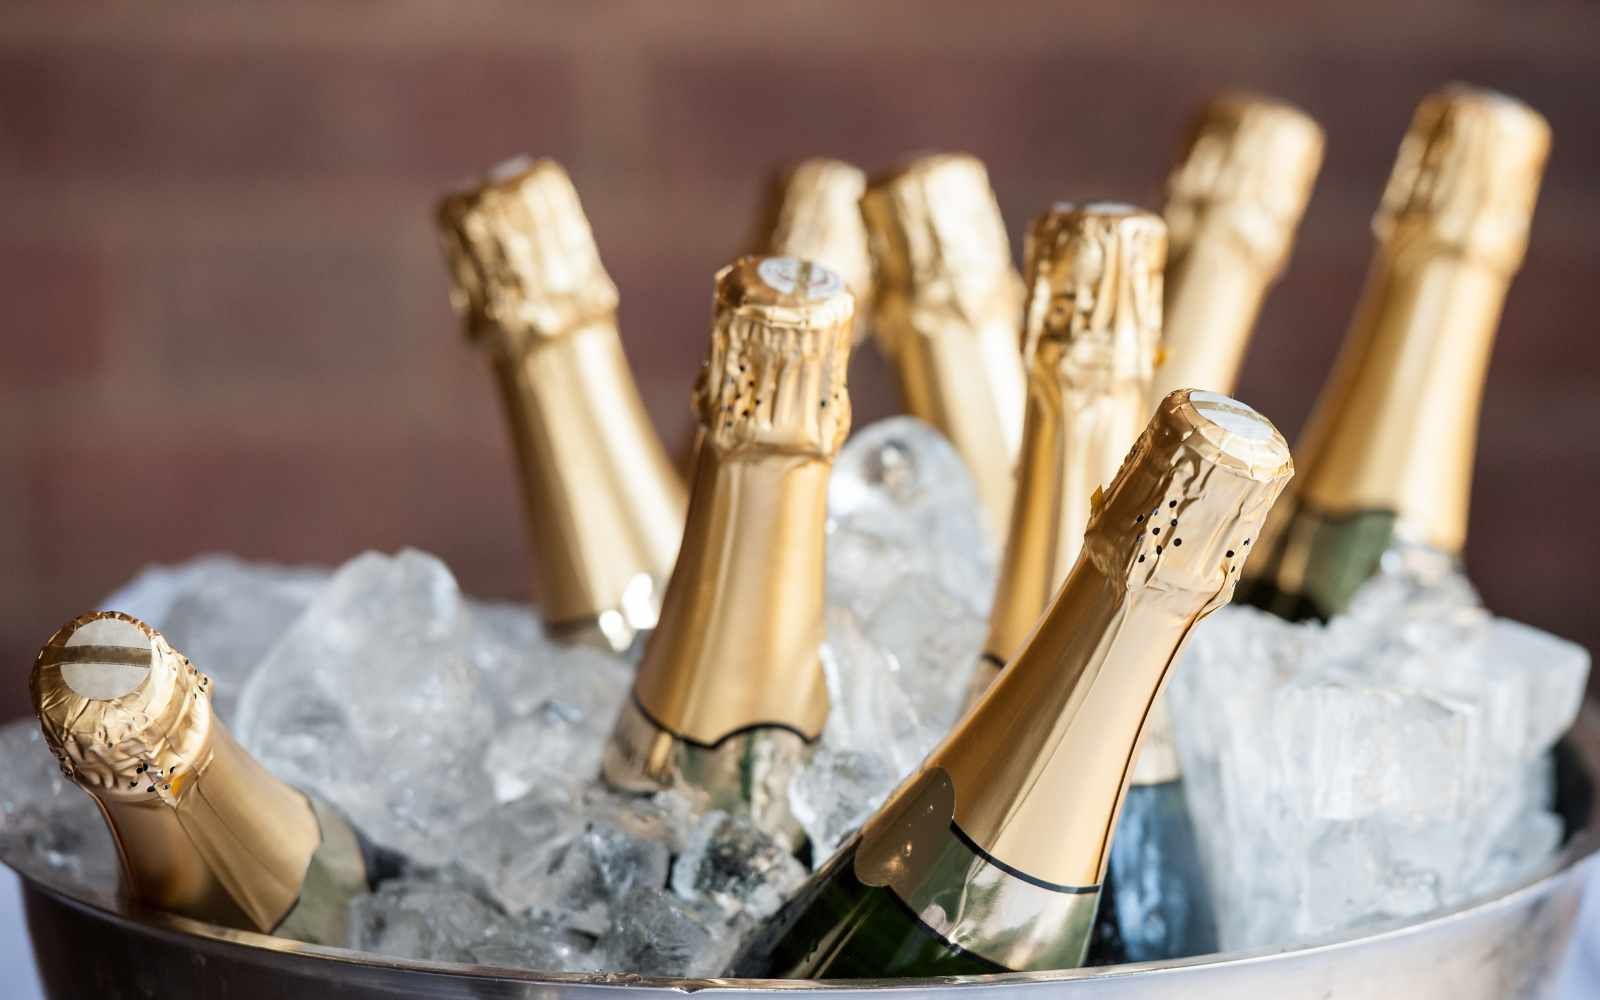 Champagnerauswahl bei miori in Saarbrückeen in einem grossen Eiskühler befinden sich 8 Flaschen Champagner